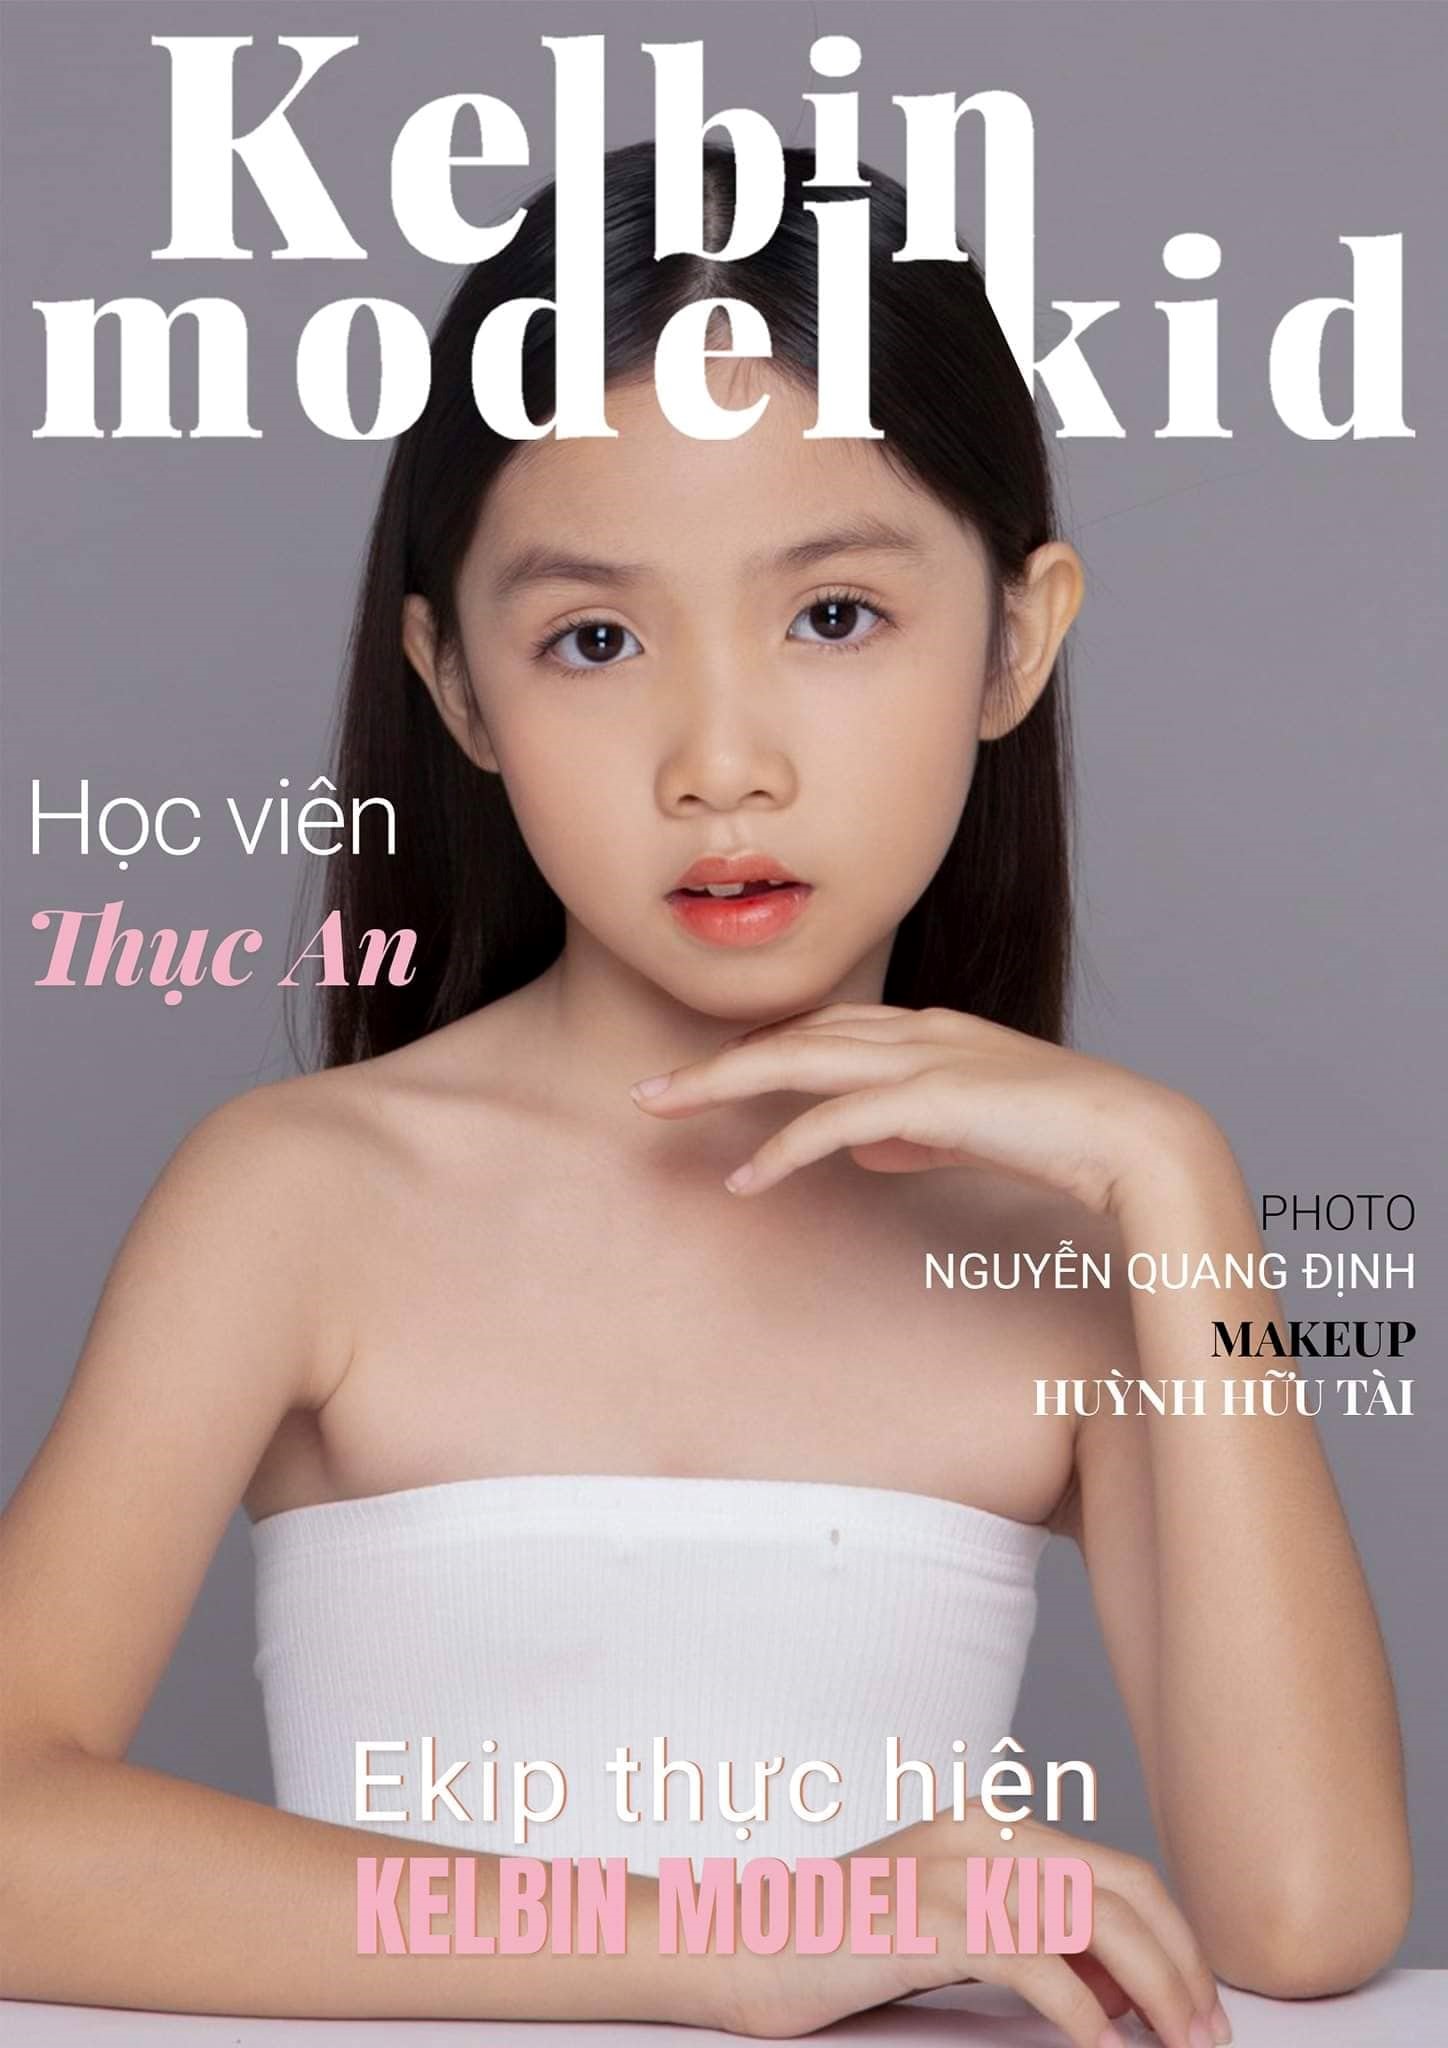 Model Kids Thuc An 5